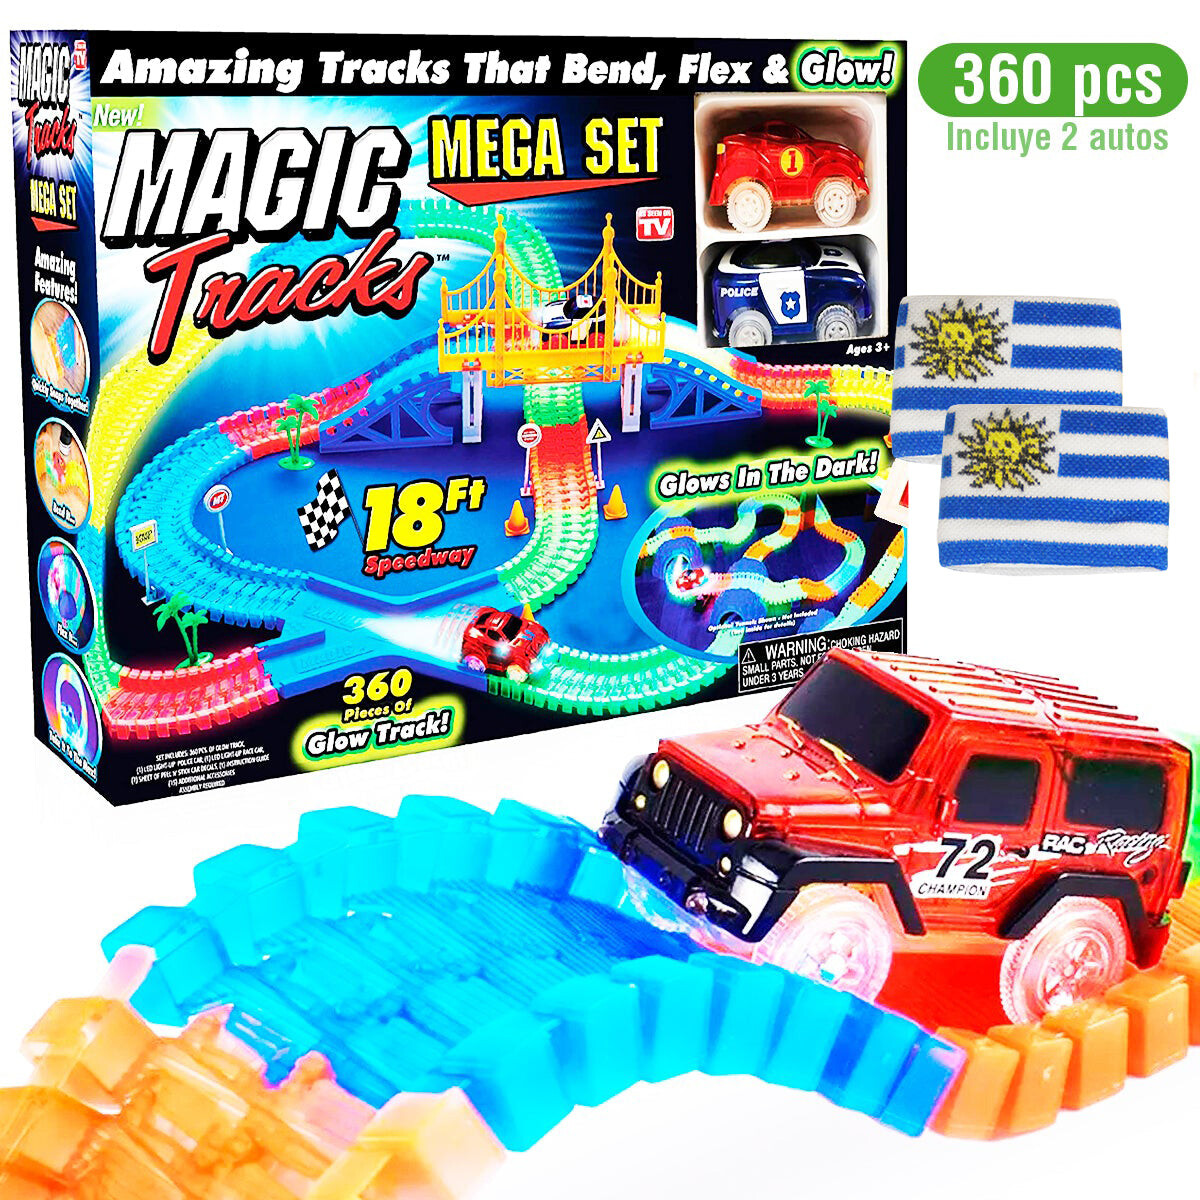 Pista Magic Tracks Flexible 360pcs +2 Autos + Regalo! 